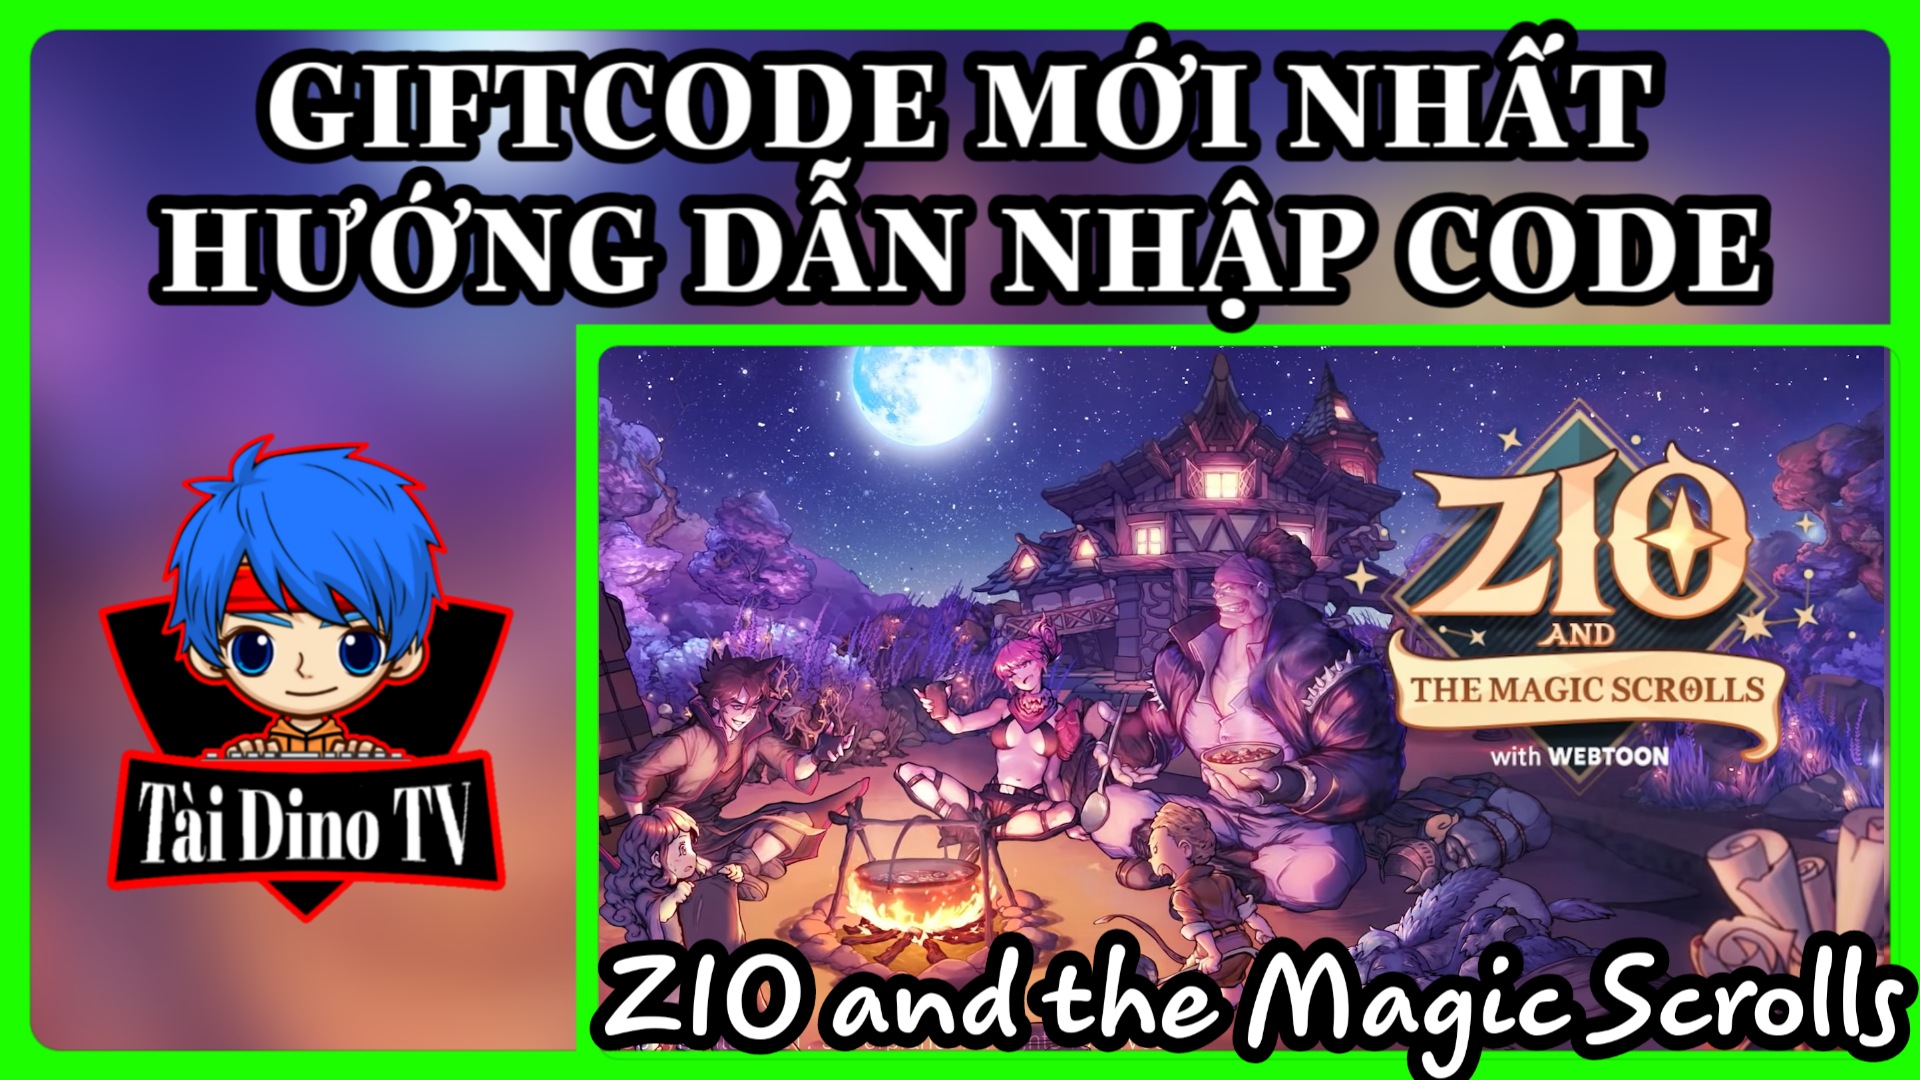 ZIO and the Magic Scrolls Giftcode mới nhất, hướng dẫn nhập code